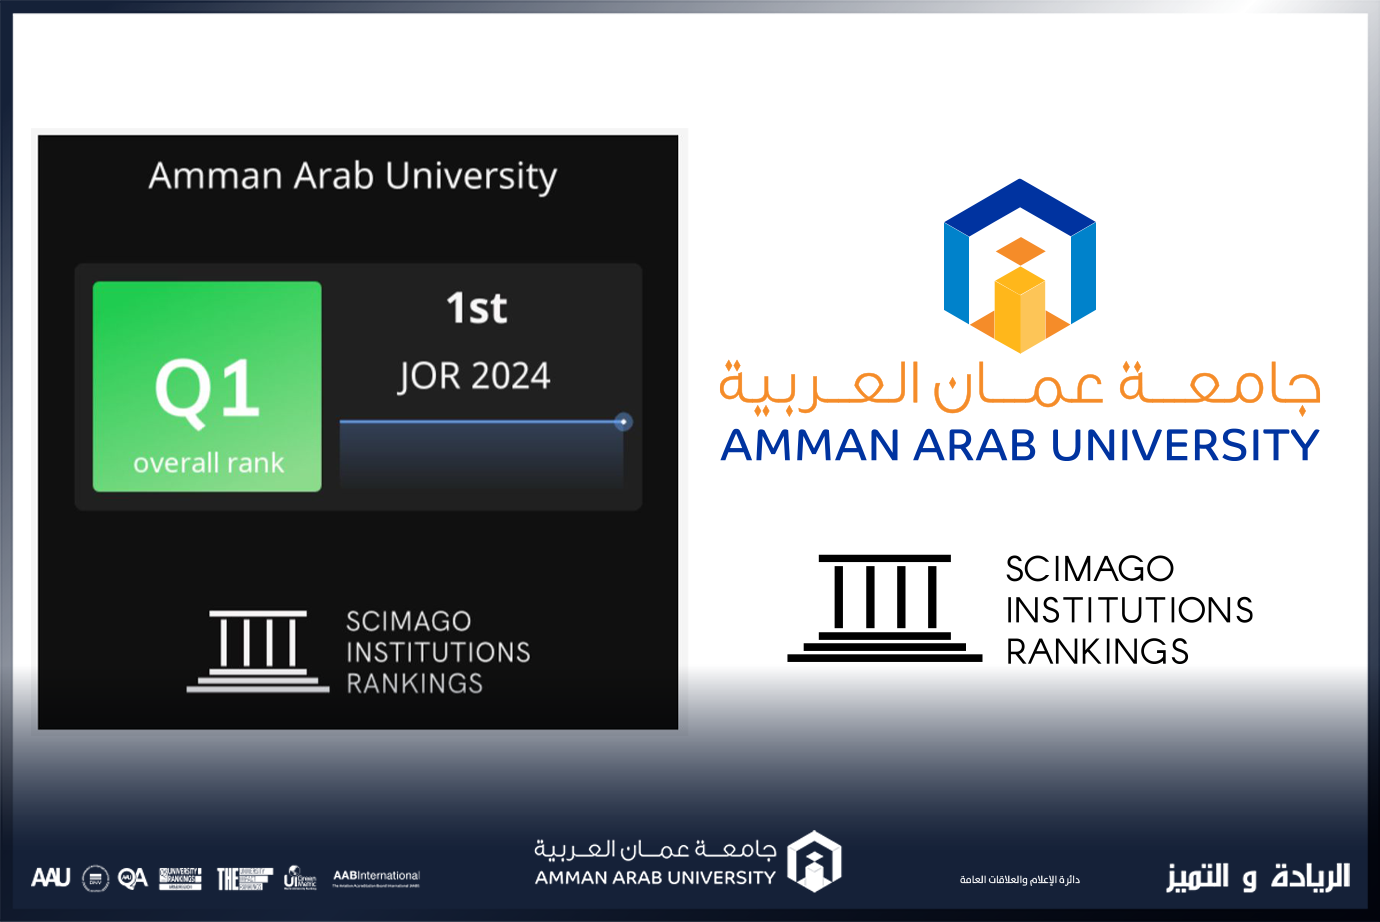  عمان العربية  الأولى على الجامعات الأردنية الحكومية والخاصة بالتصنيف الدولي سيماجو  Scimago